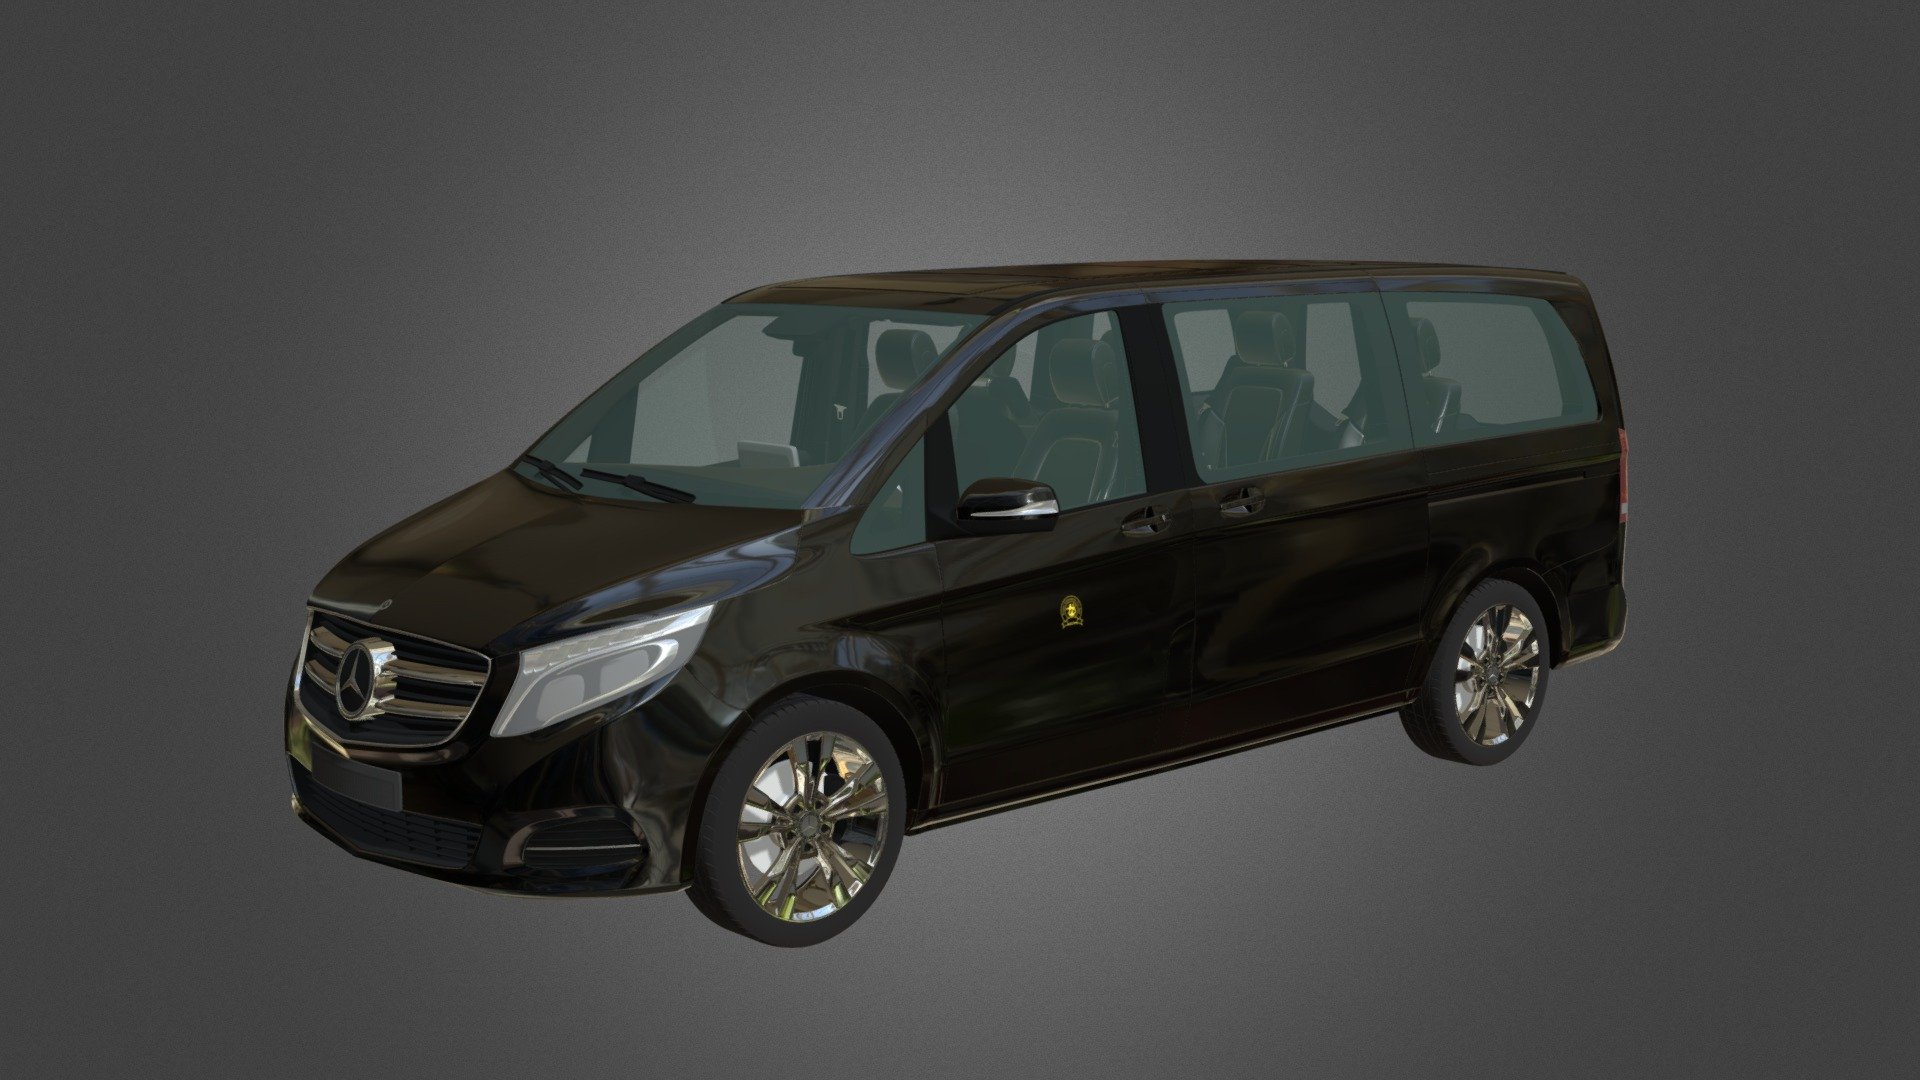 Prime Limousine (Mercedes- Benz V-class) - 3D model by monostudio 3d model